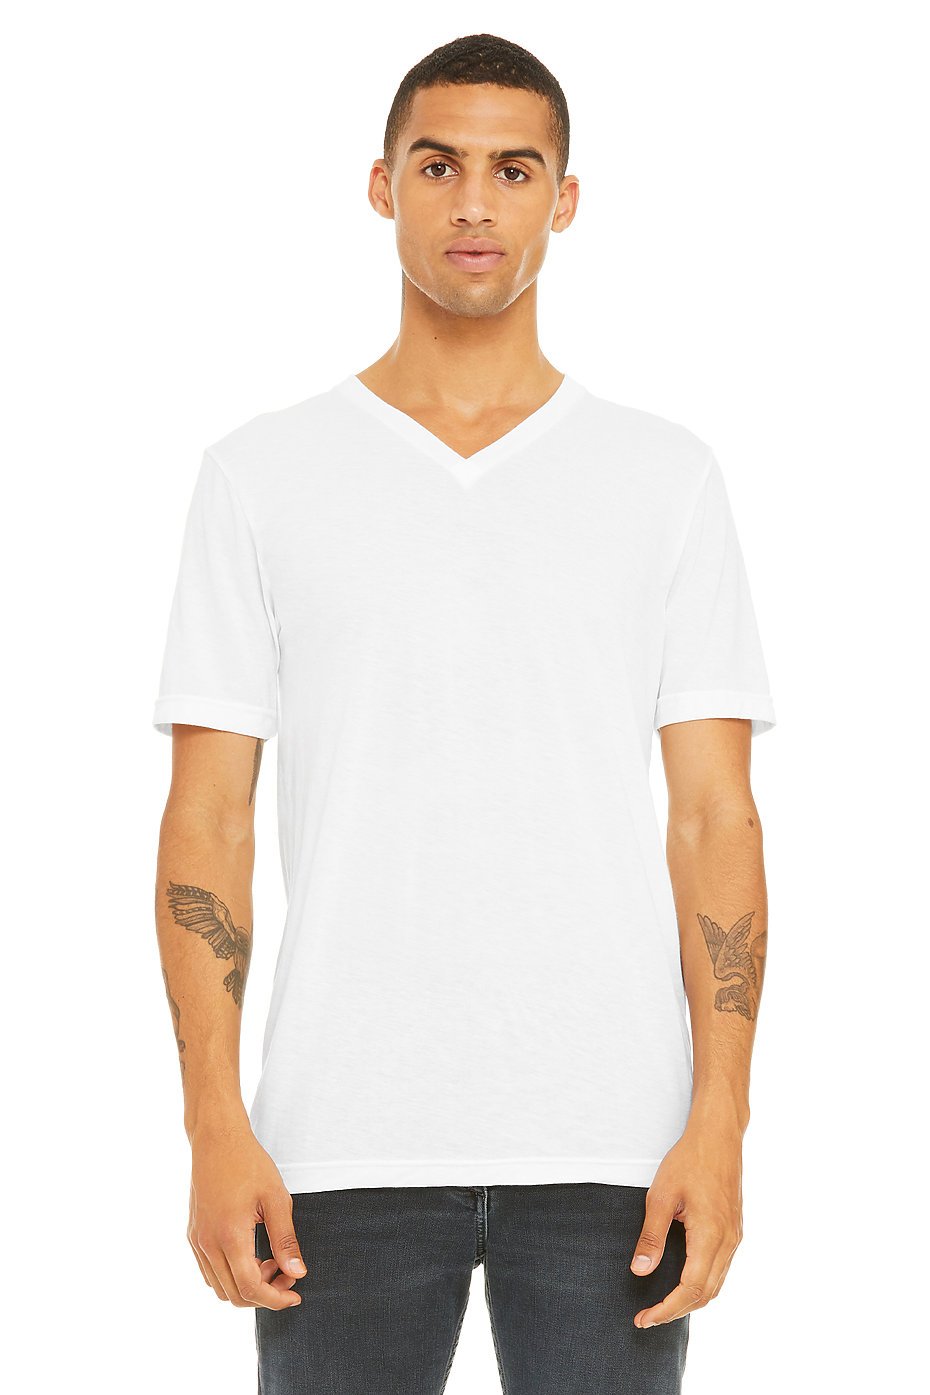 White V Neck T Shirt for Men